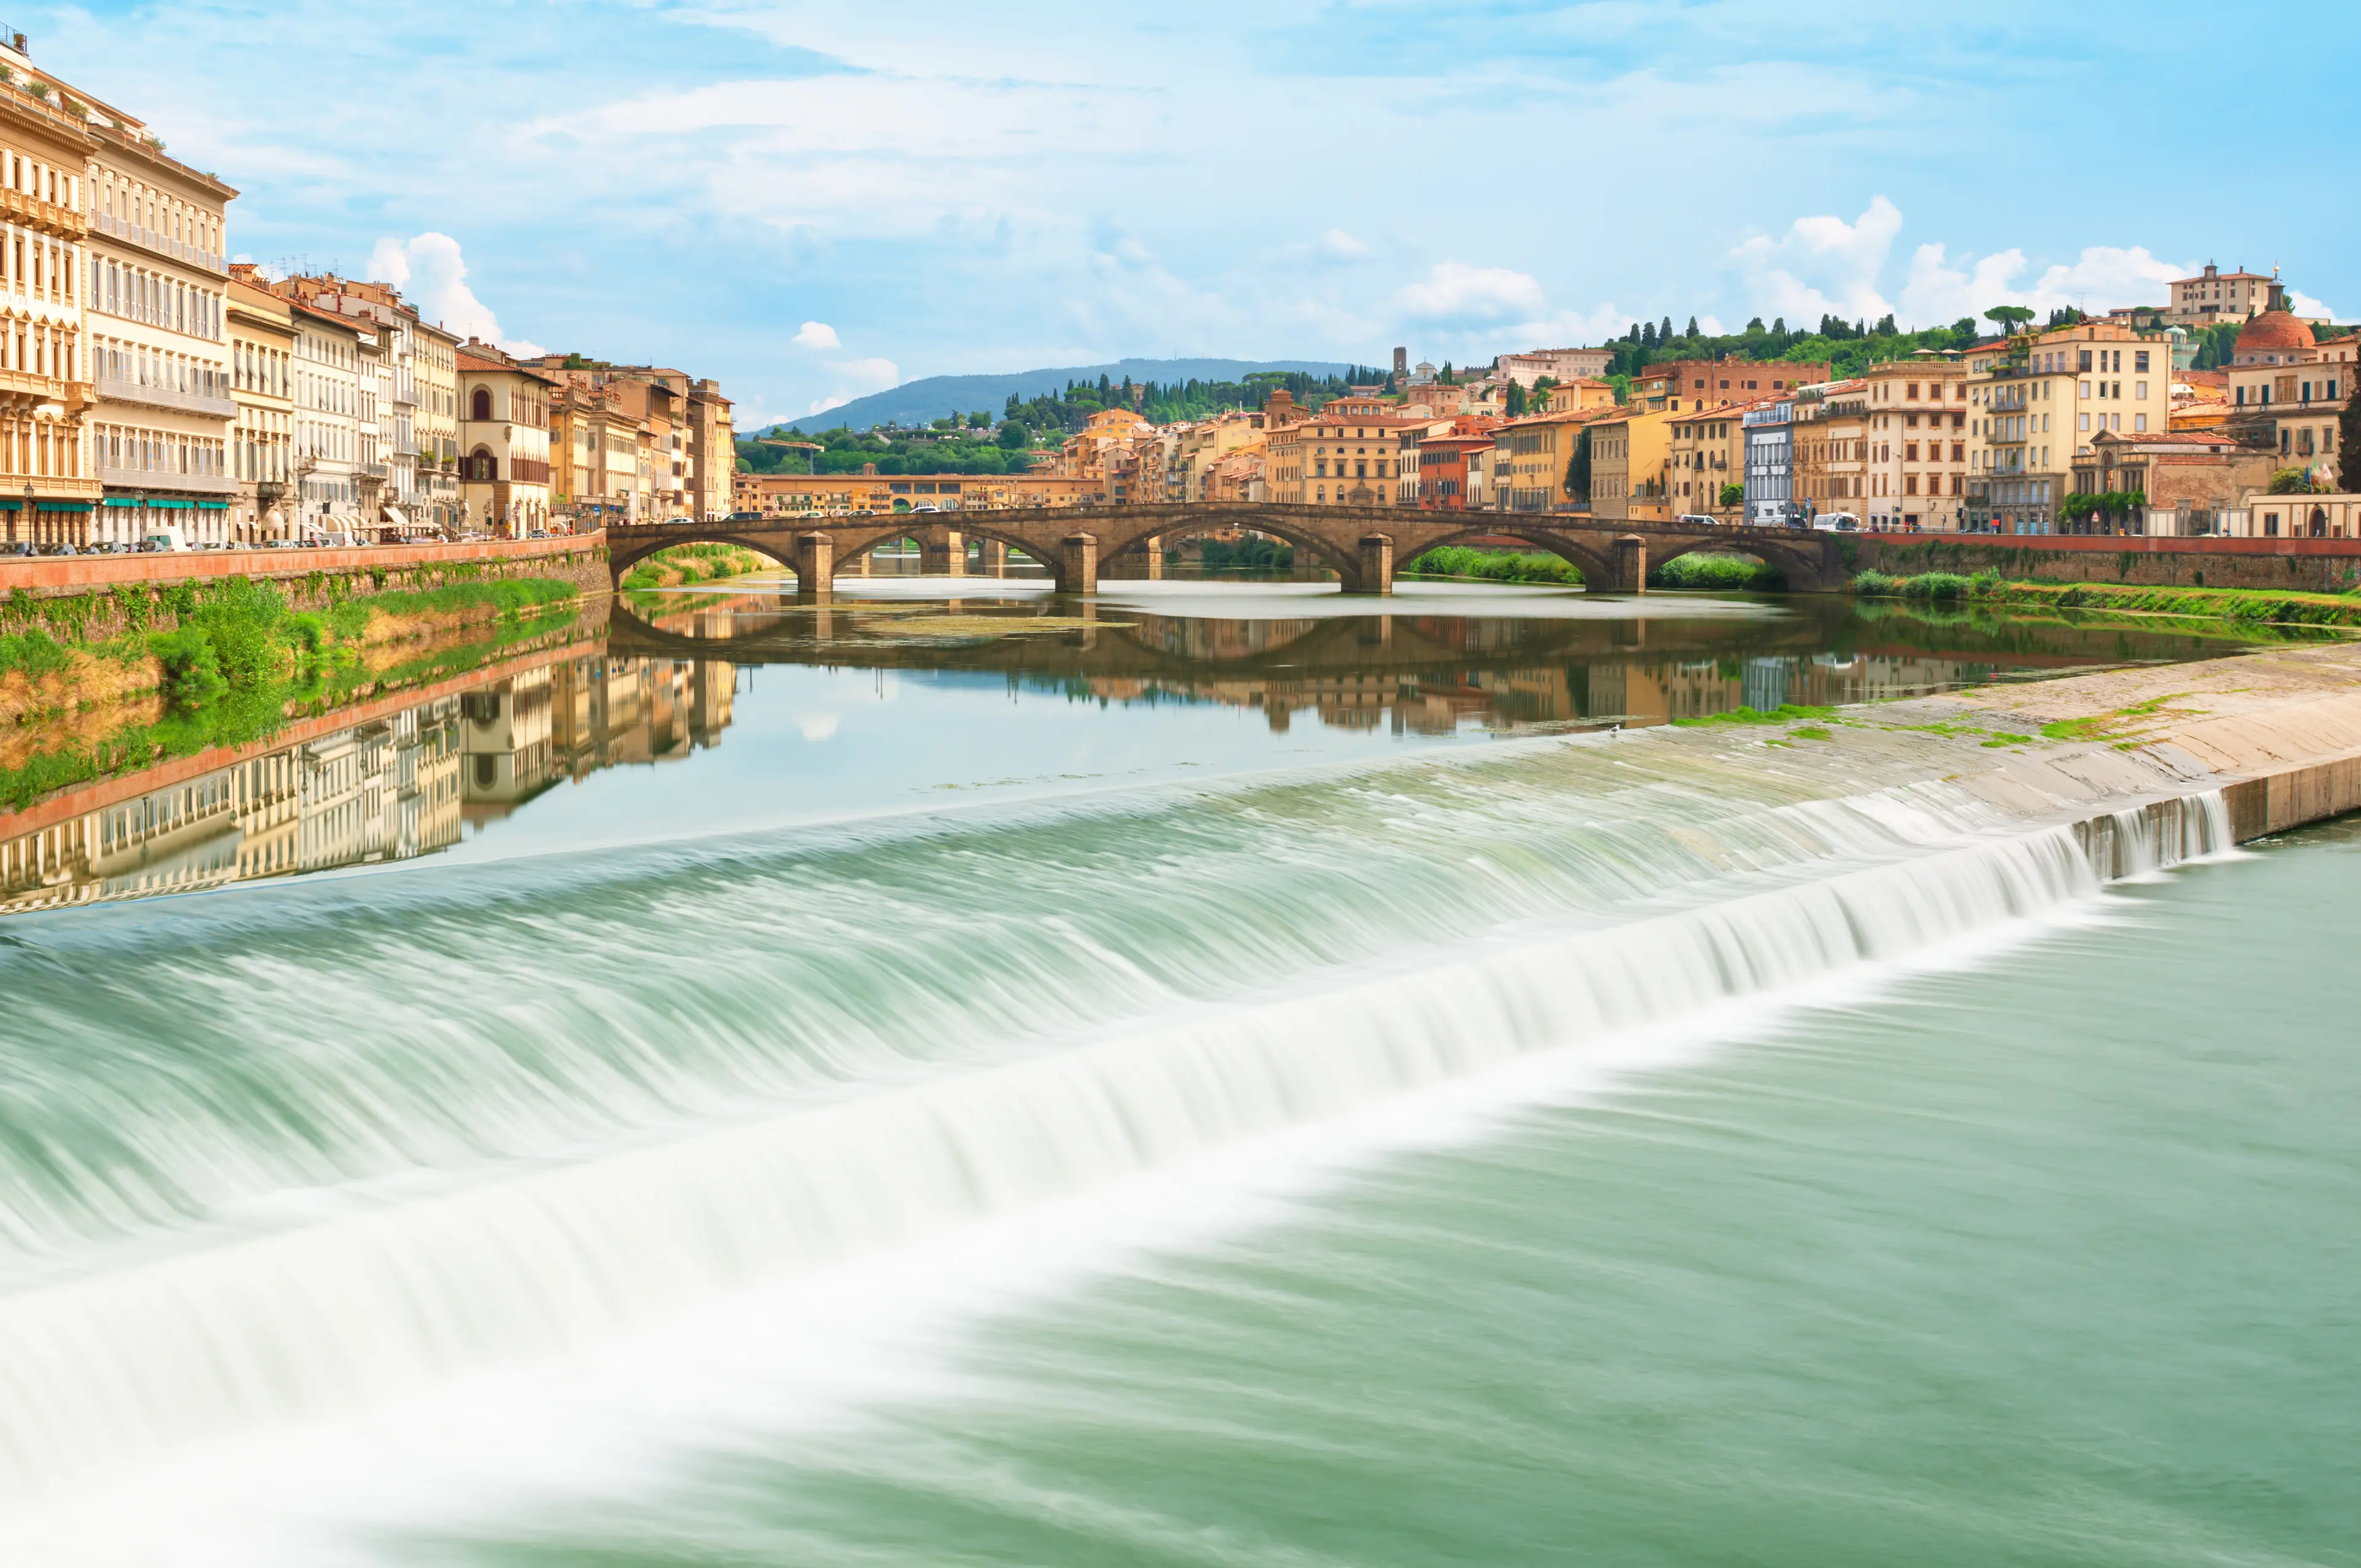 River Arno in Tuscany